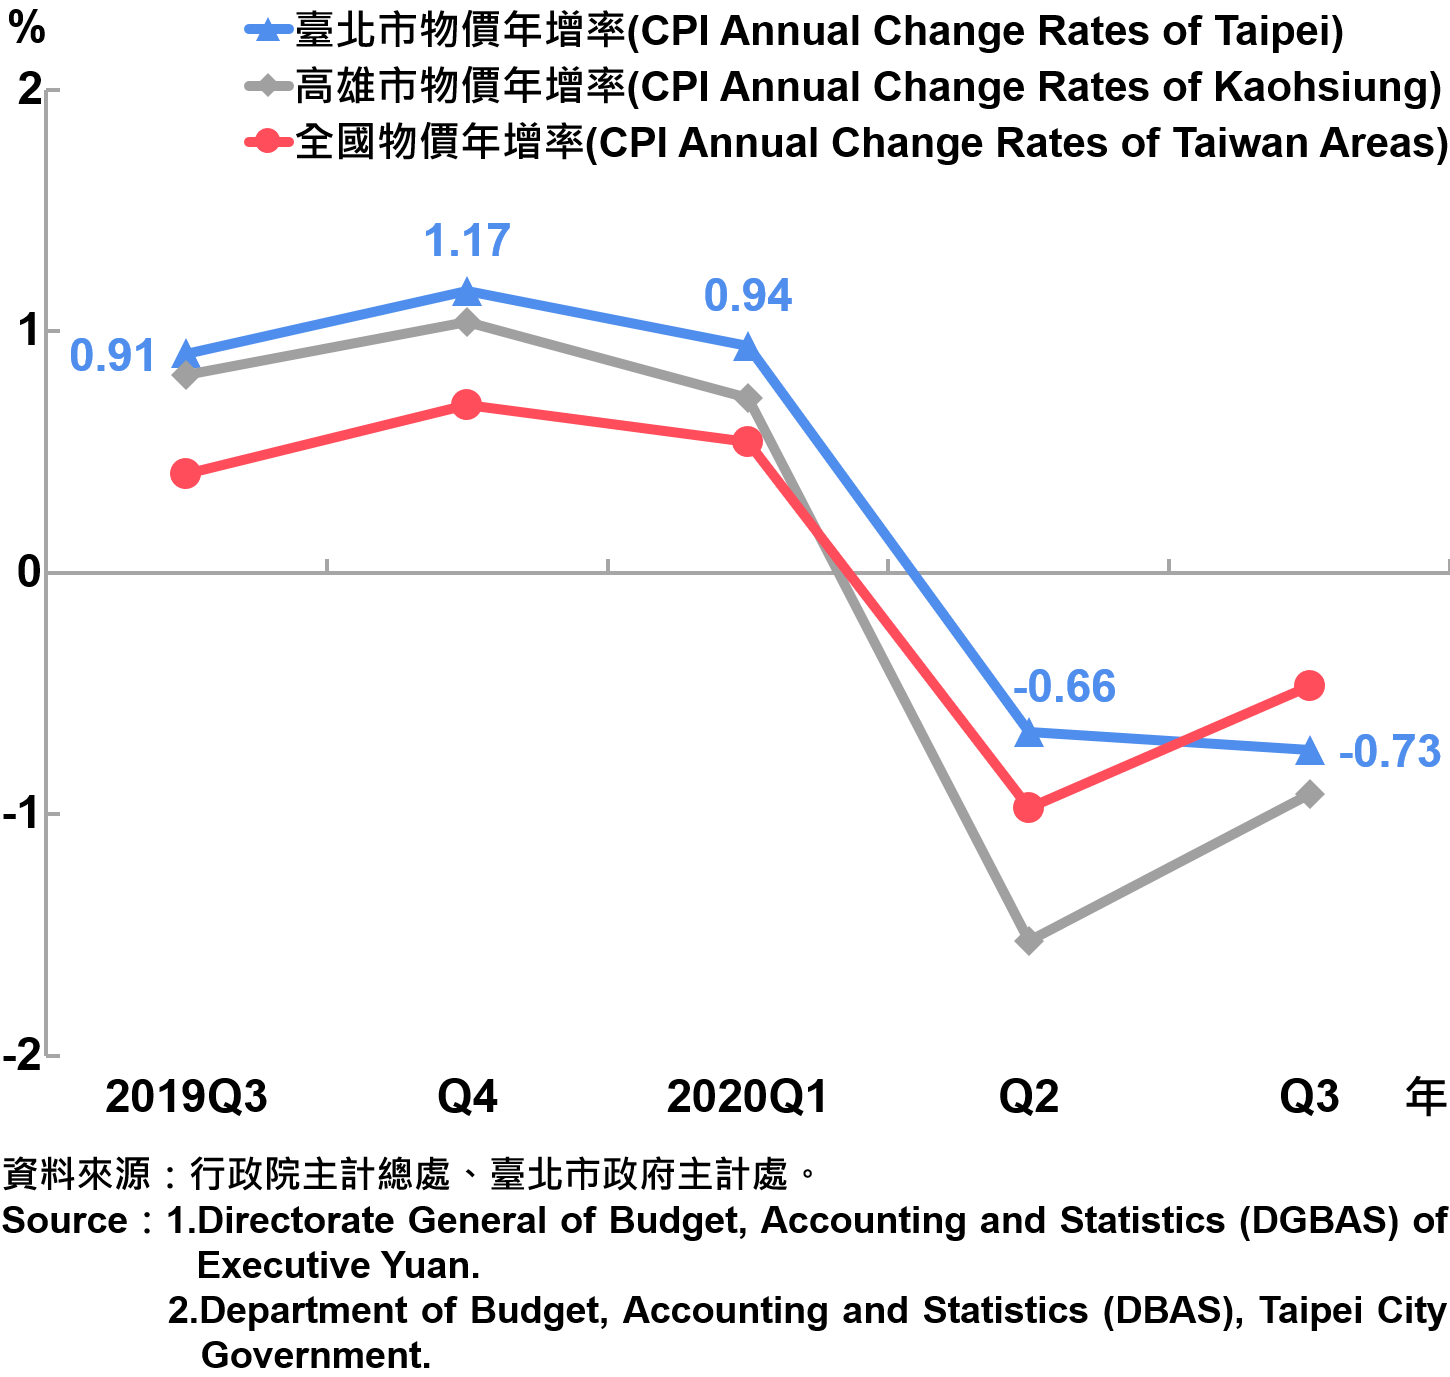 臺北市消費者物價指數（CPI）年增率—2020Q3 The Changes of CPI in Taipei City—2020Q3